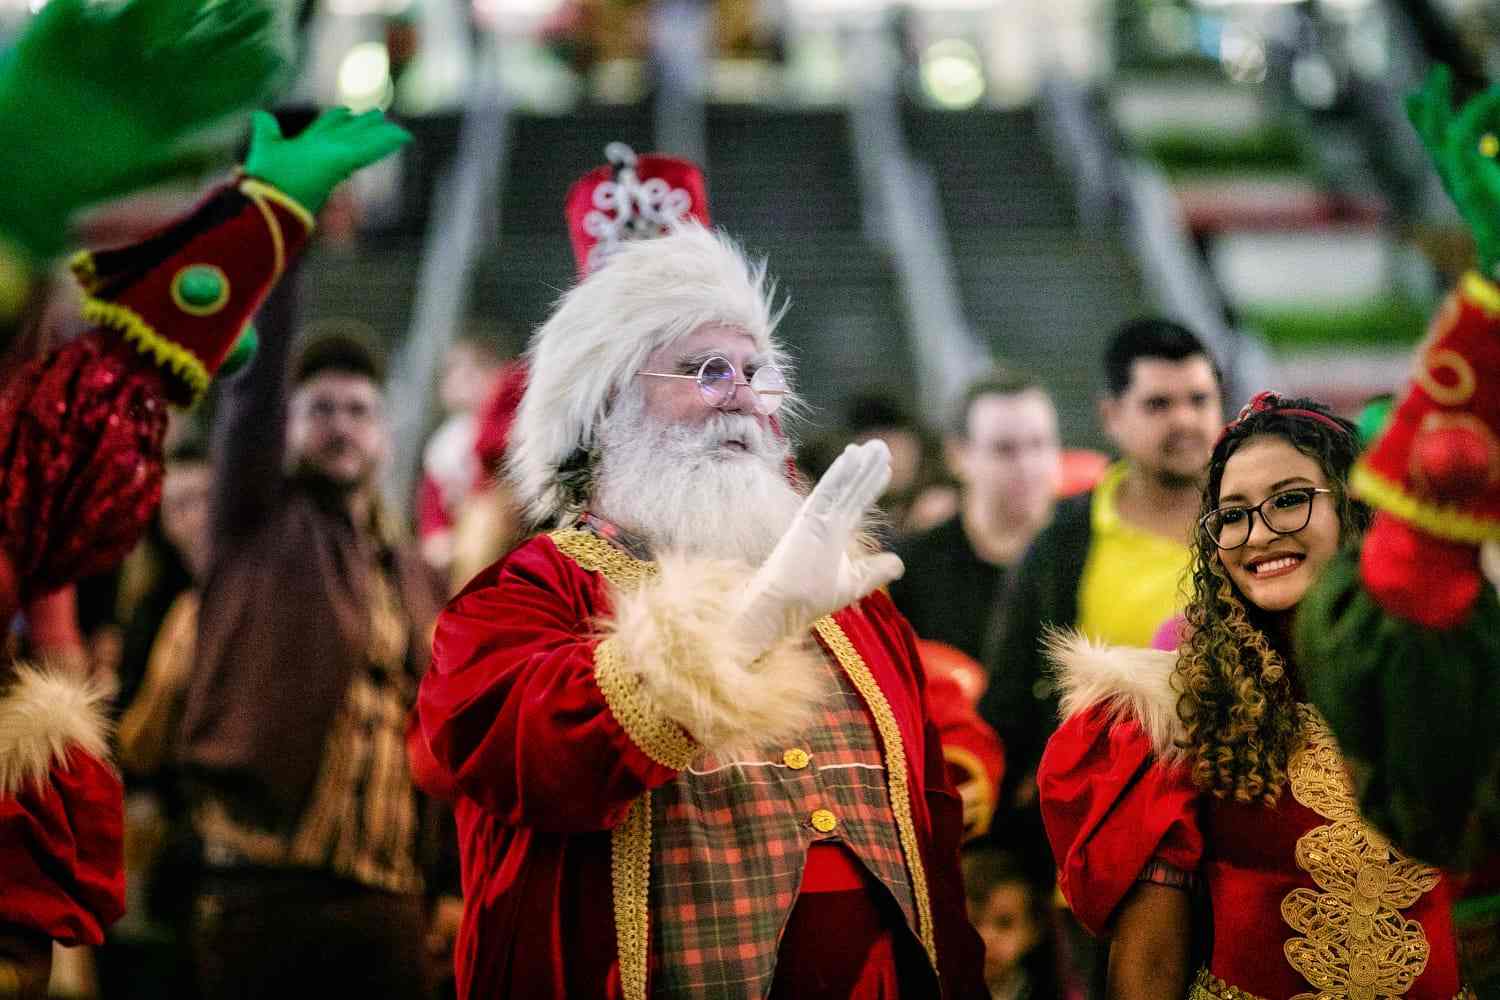 Parque Dom Pedro celebra a chegada do Papai Noel no próximo dia 10 com espetáculo musical